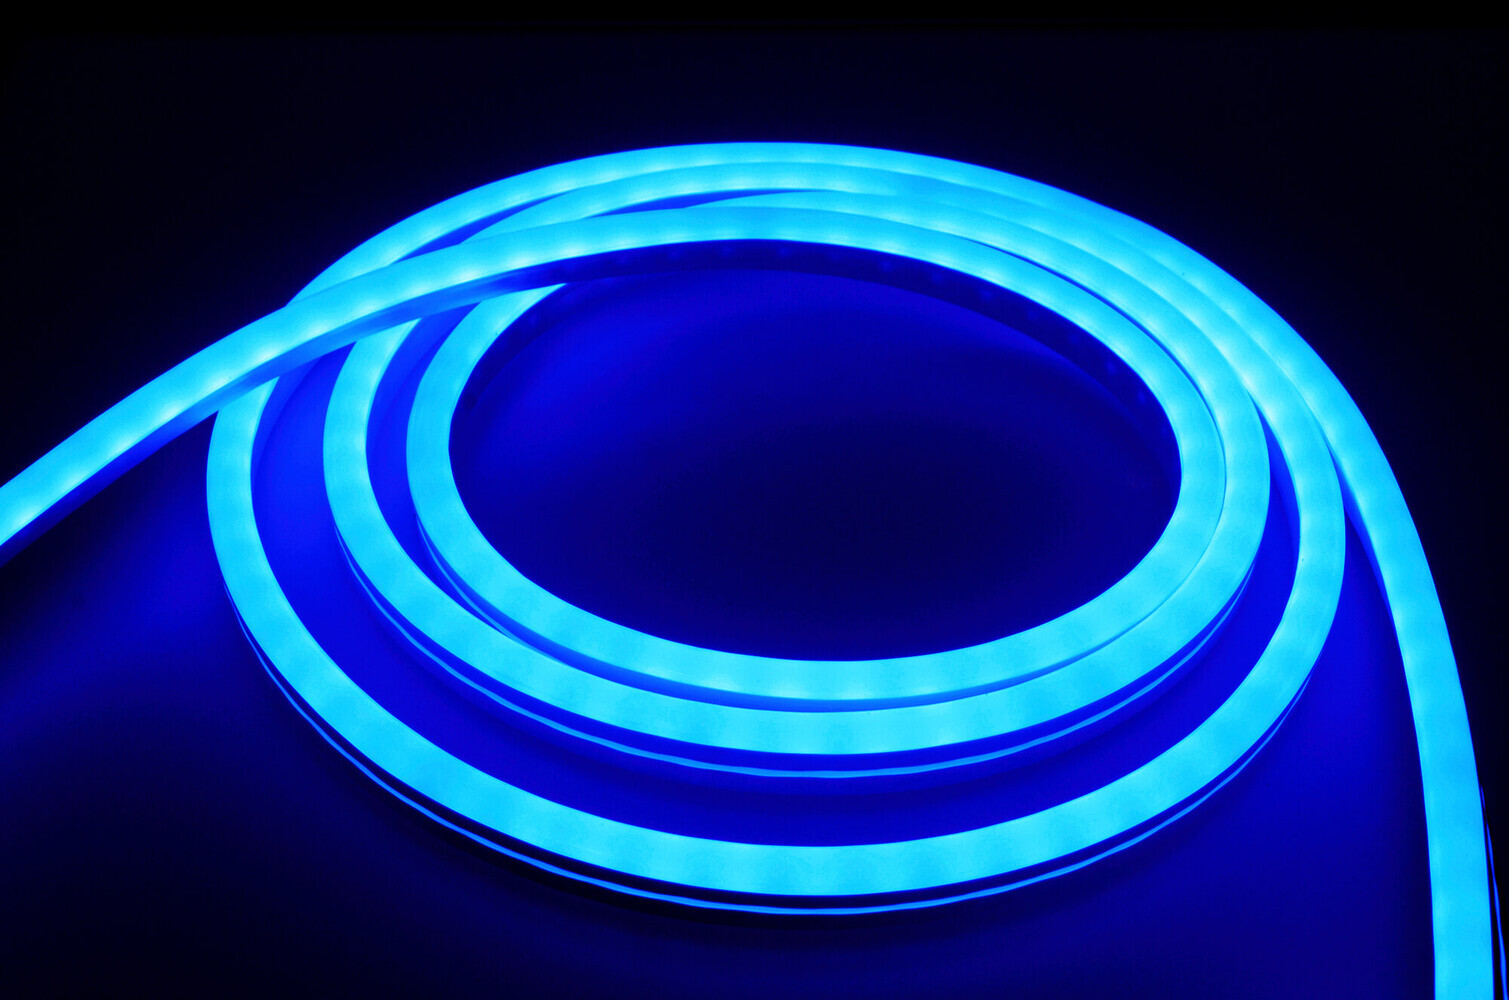 Hochwertiger, farbenfroher LED-Streifen von LED Universum